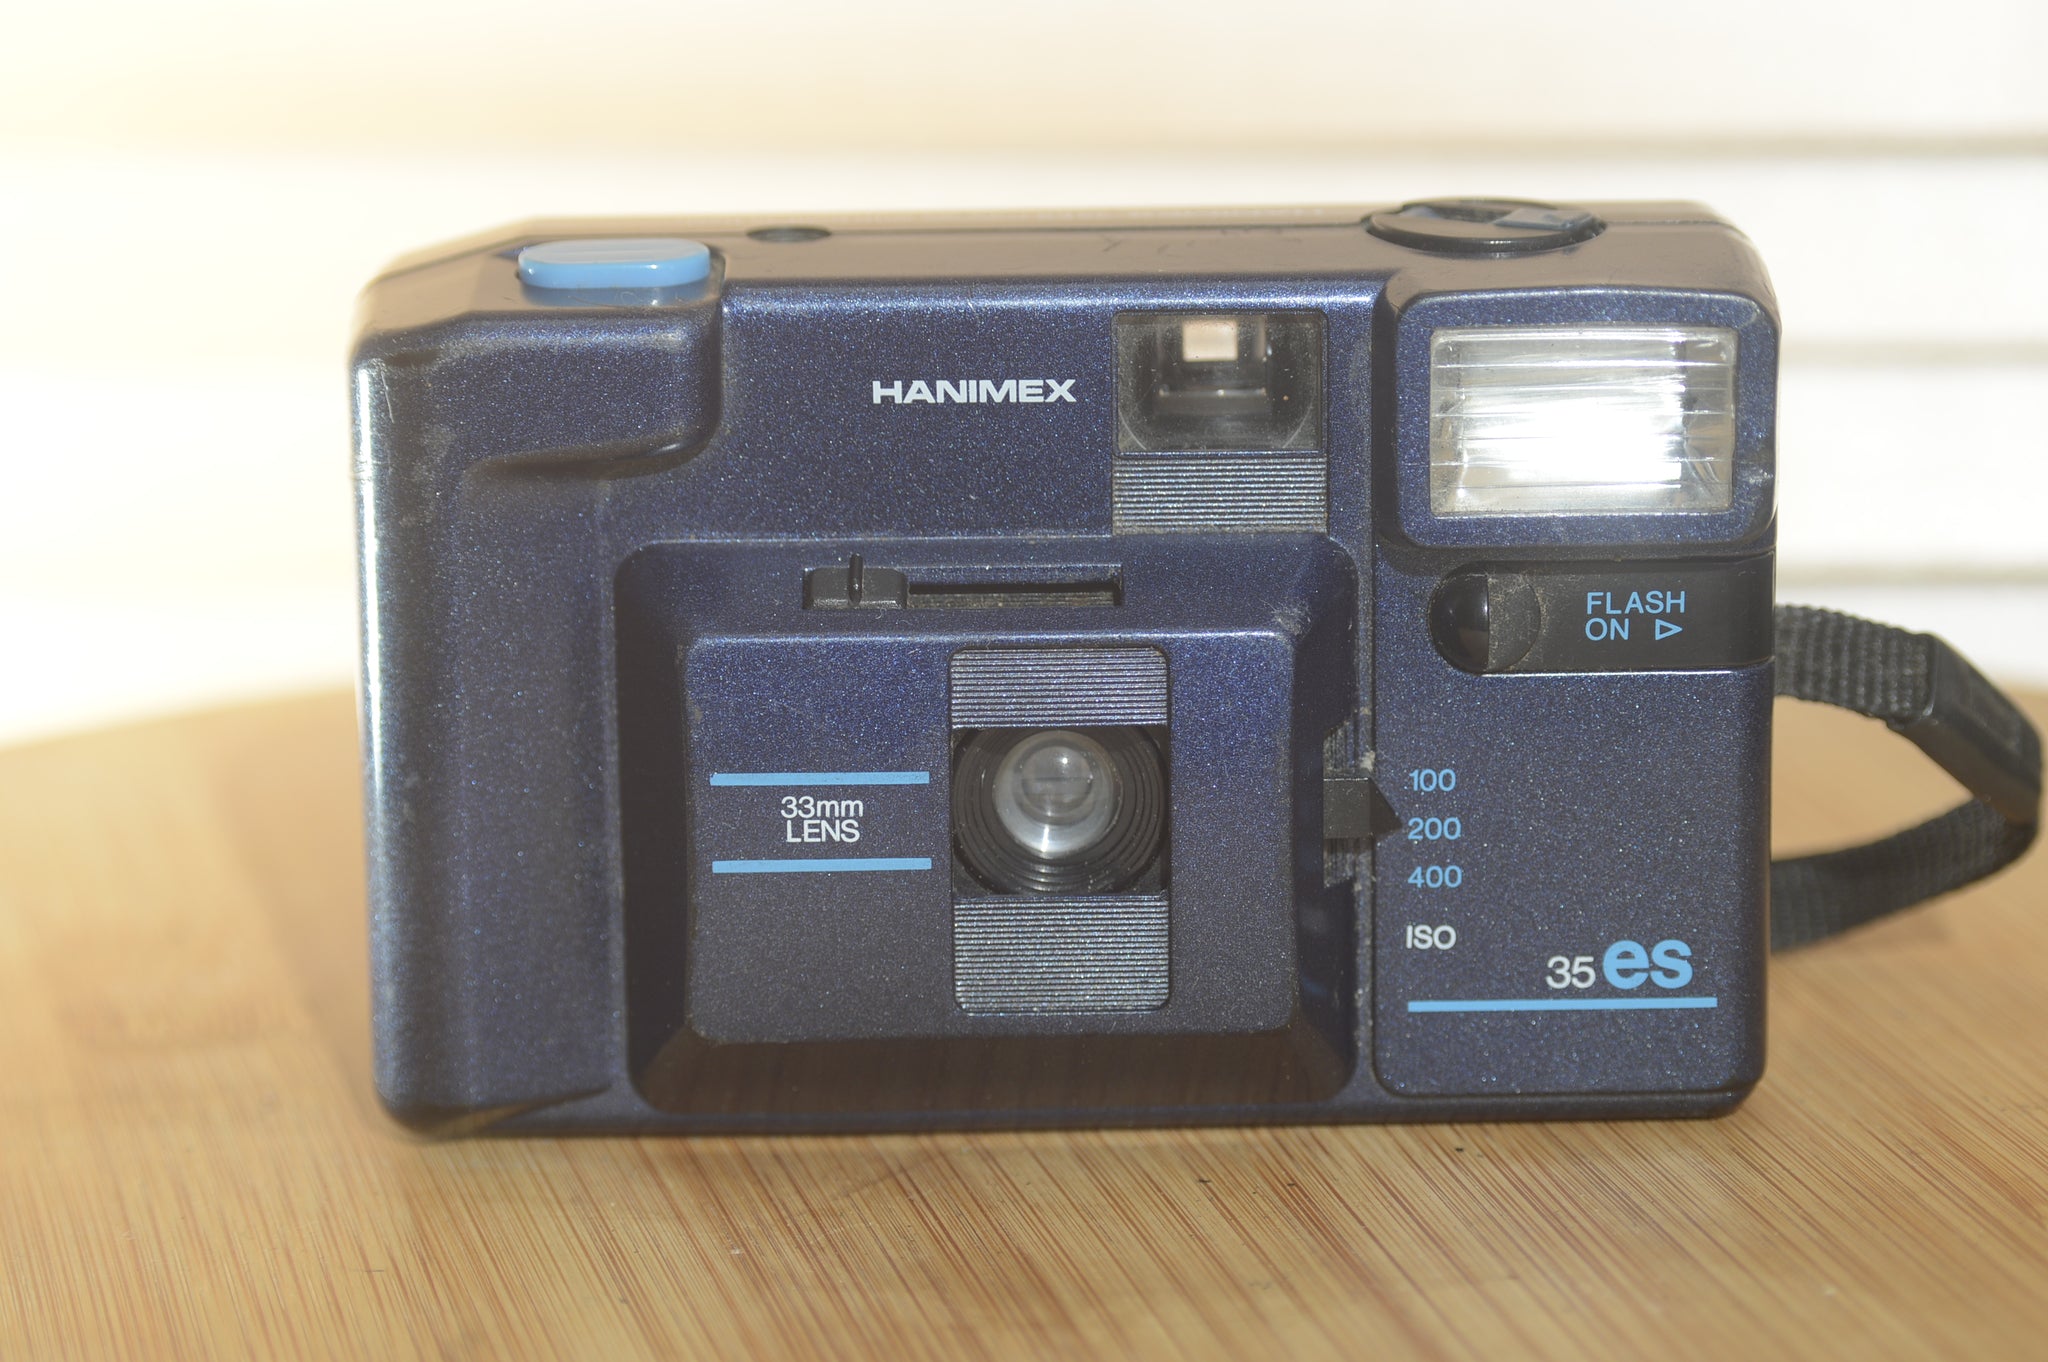 pretty vintage cameras